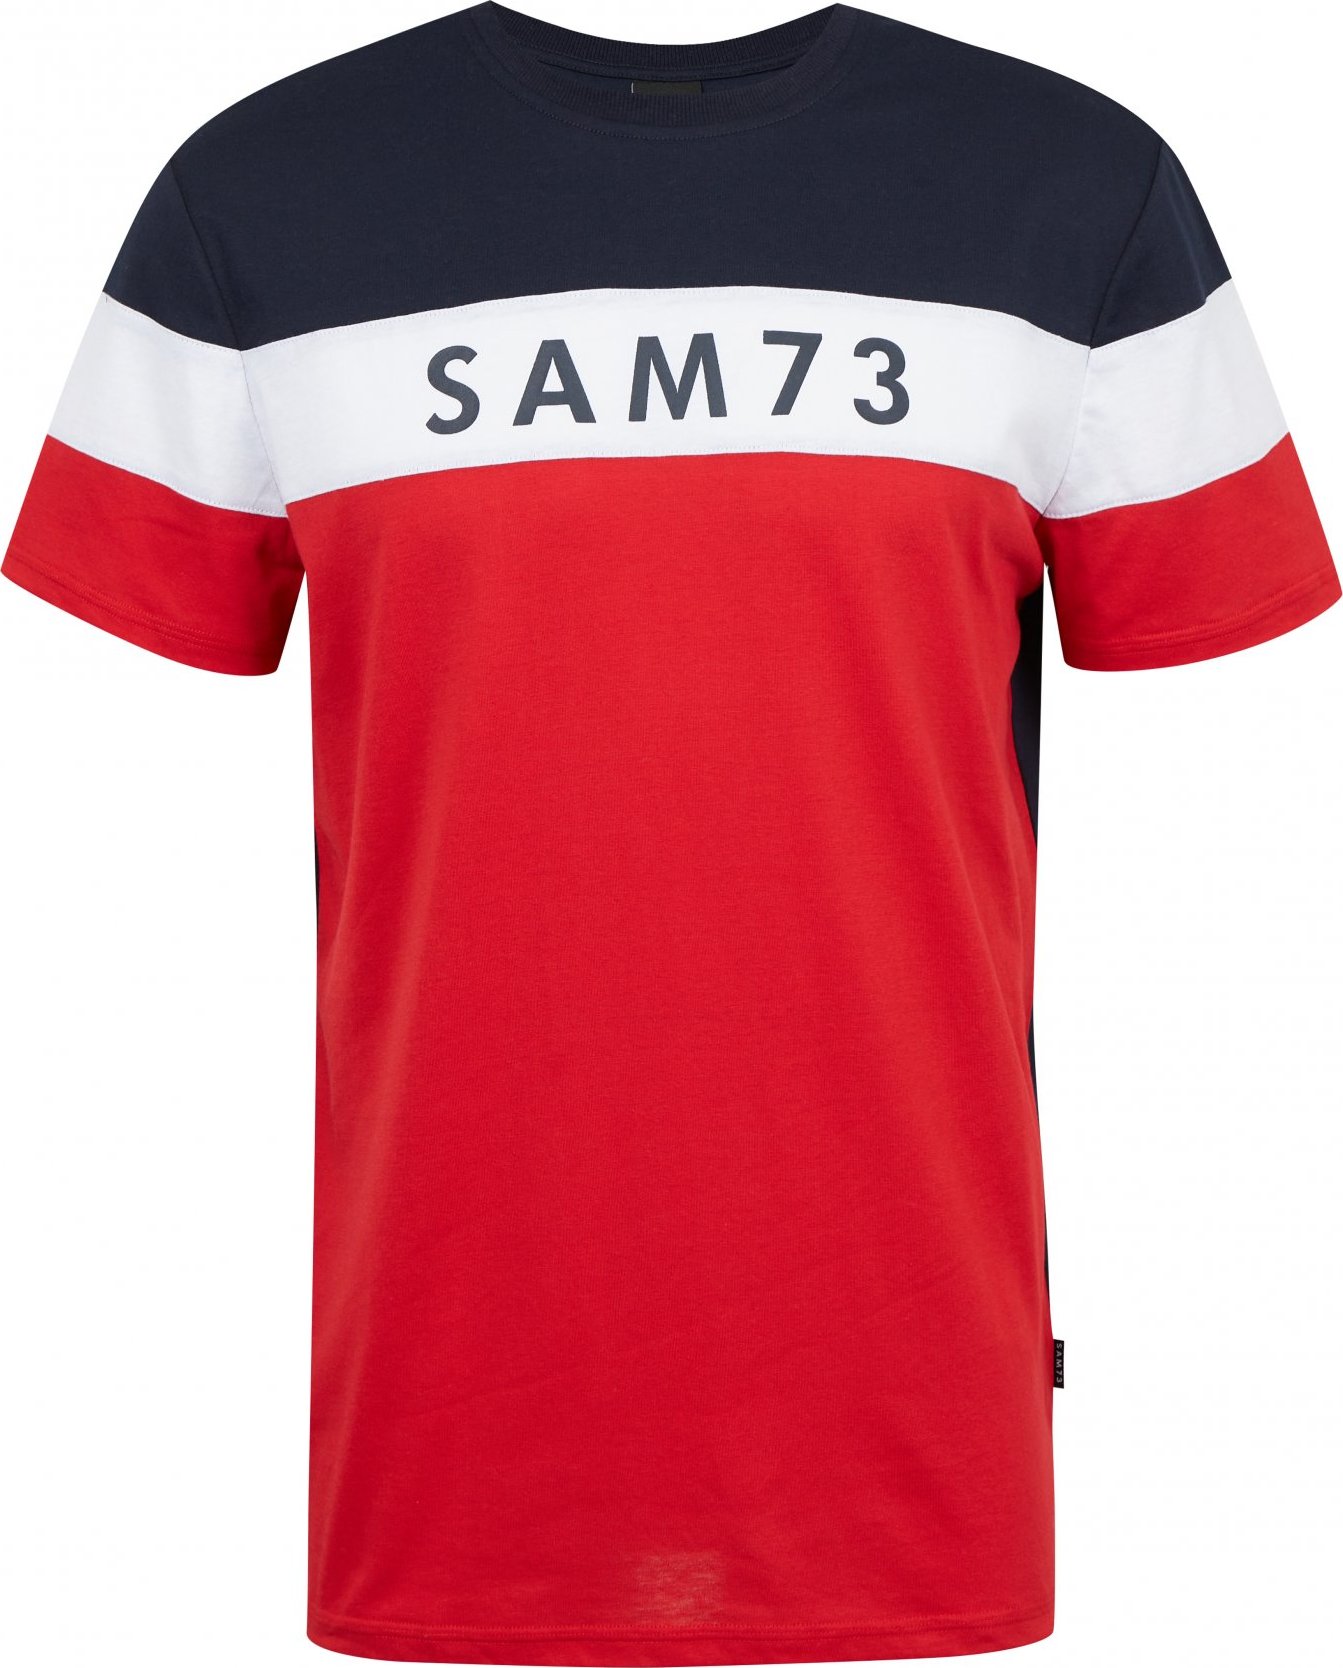 Pánské triko SAM73 kavix červené Velikost: S